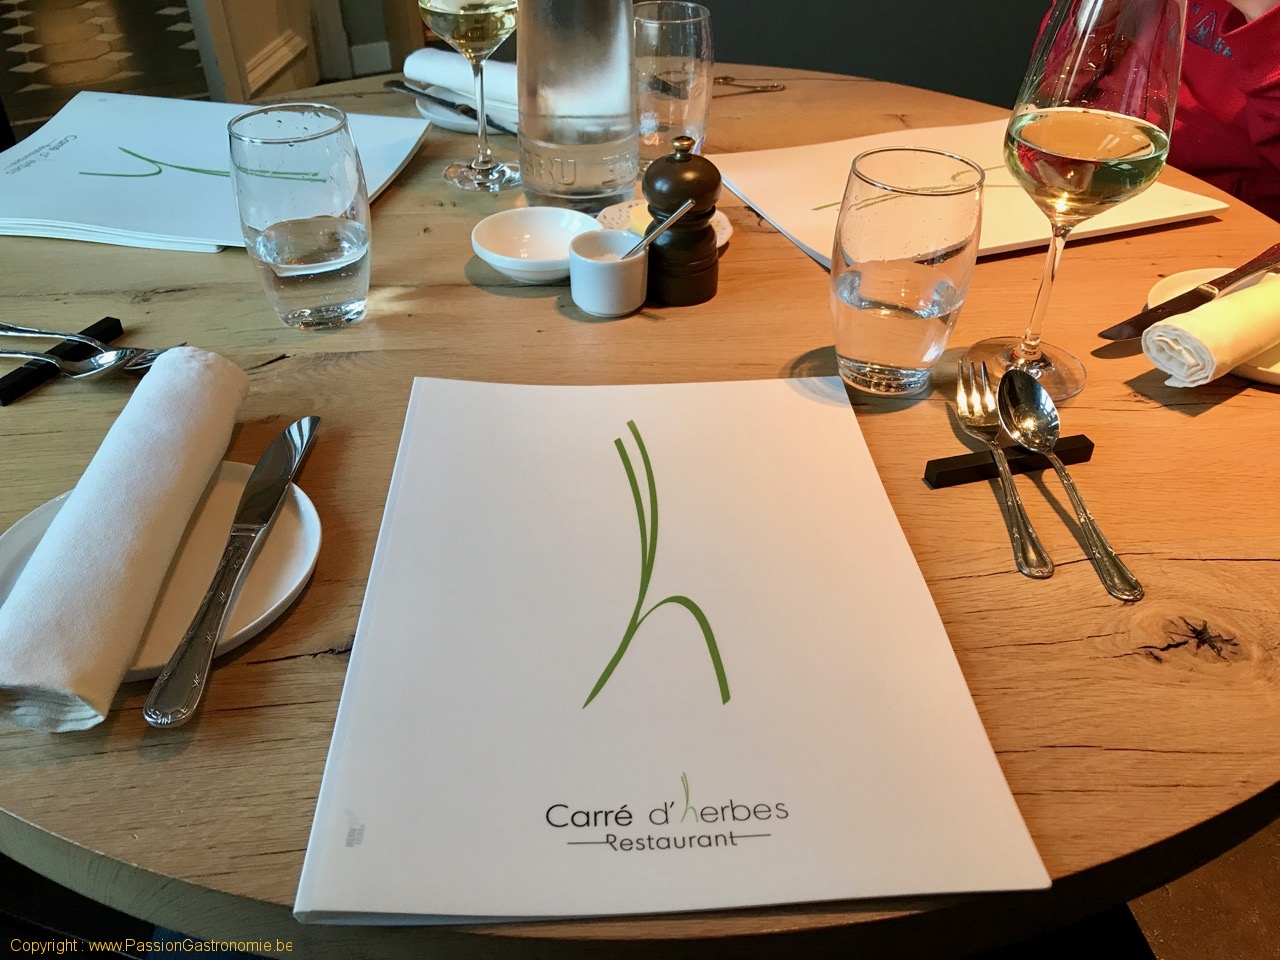 Restaurant Le Carré d'herbes - La table